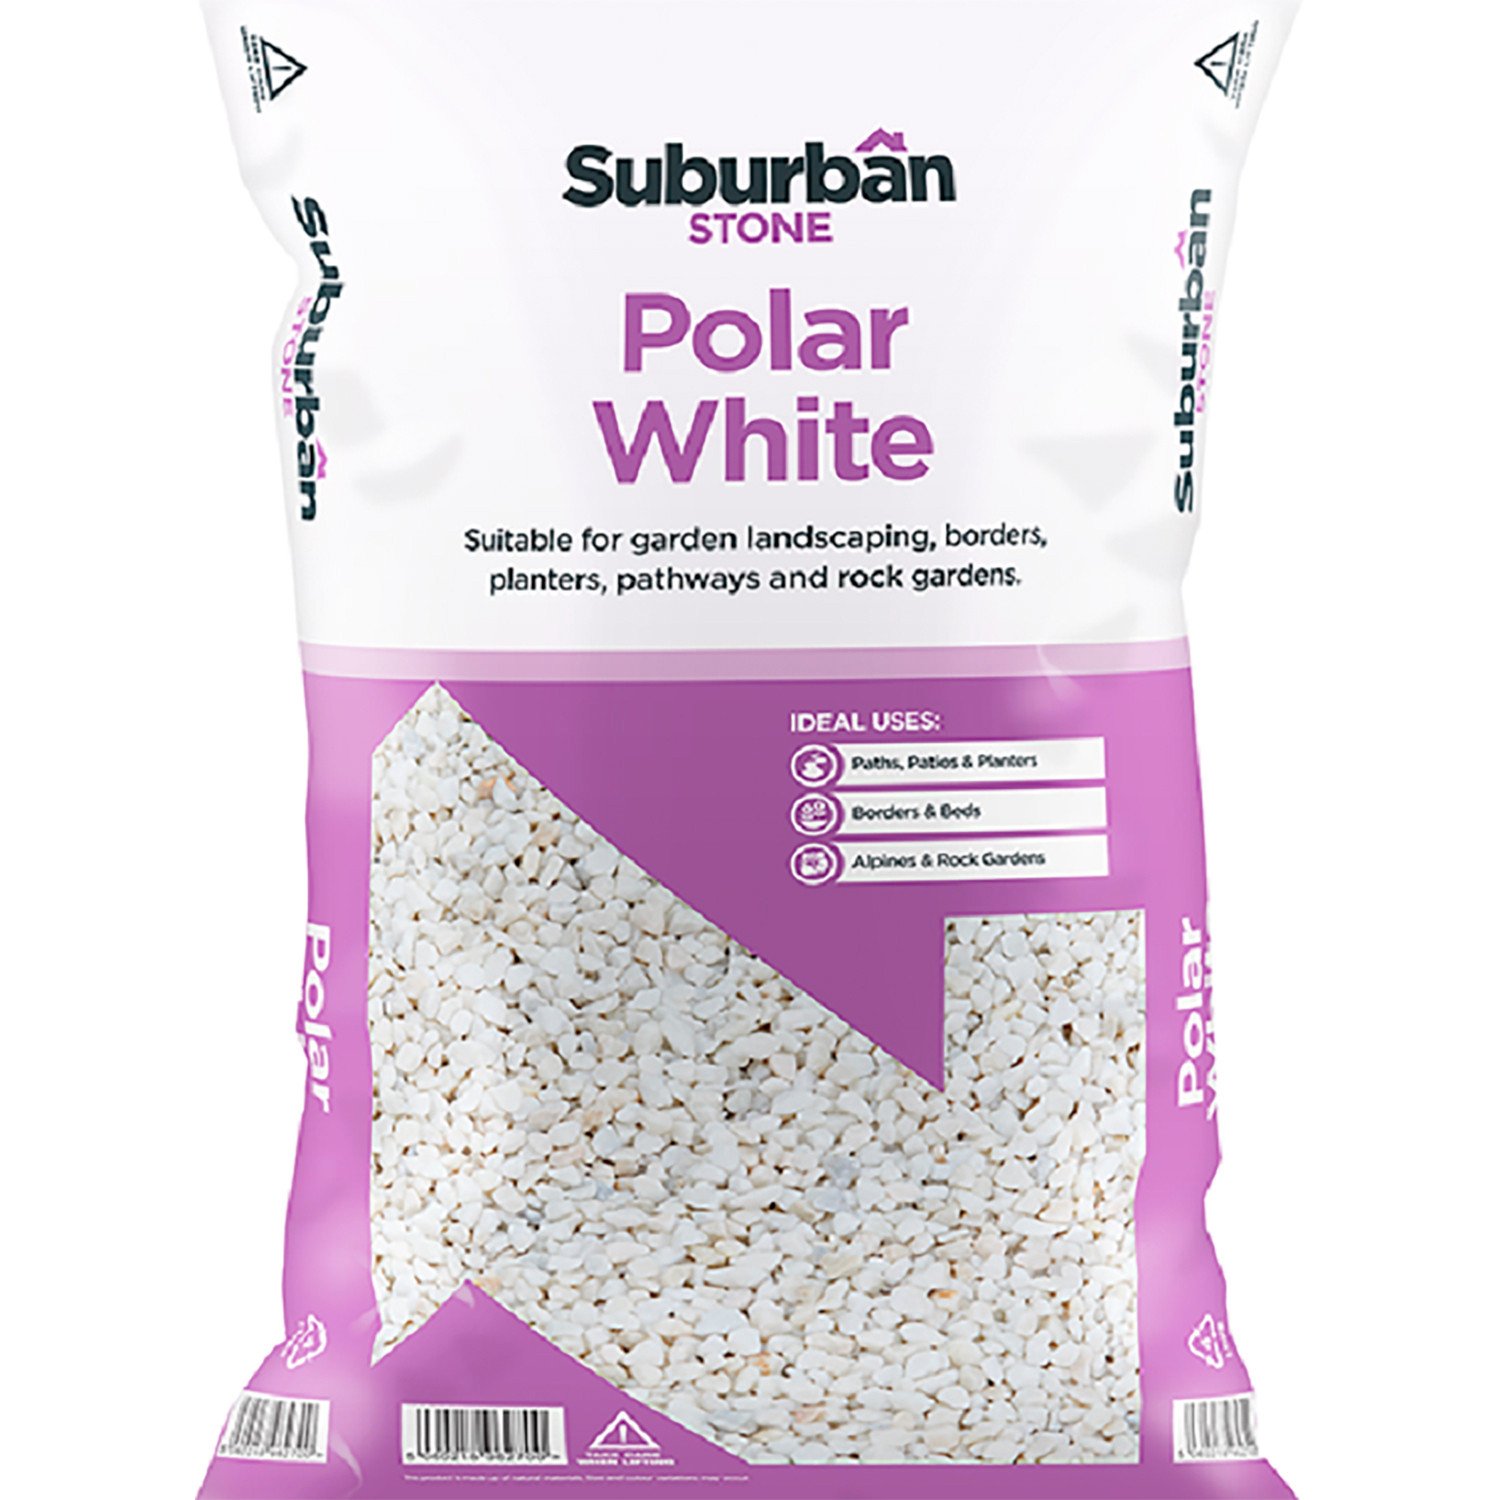 Suburban Stone Polar White Chippings 20kg Image